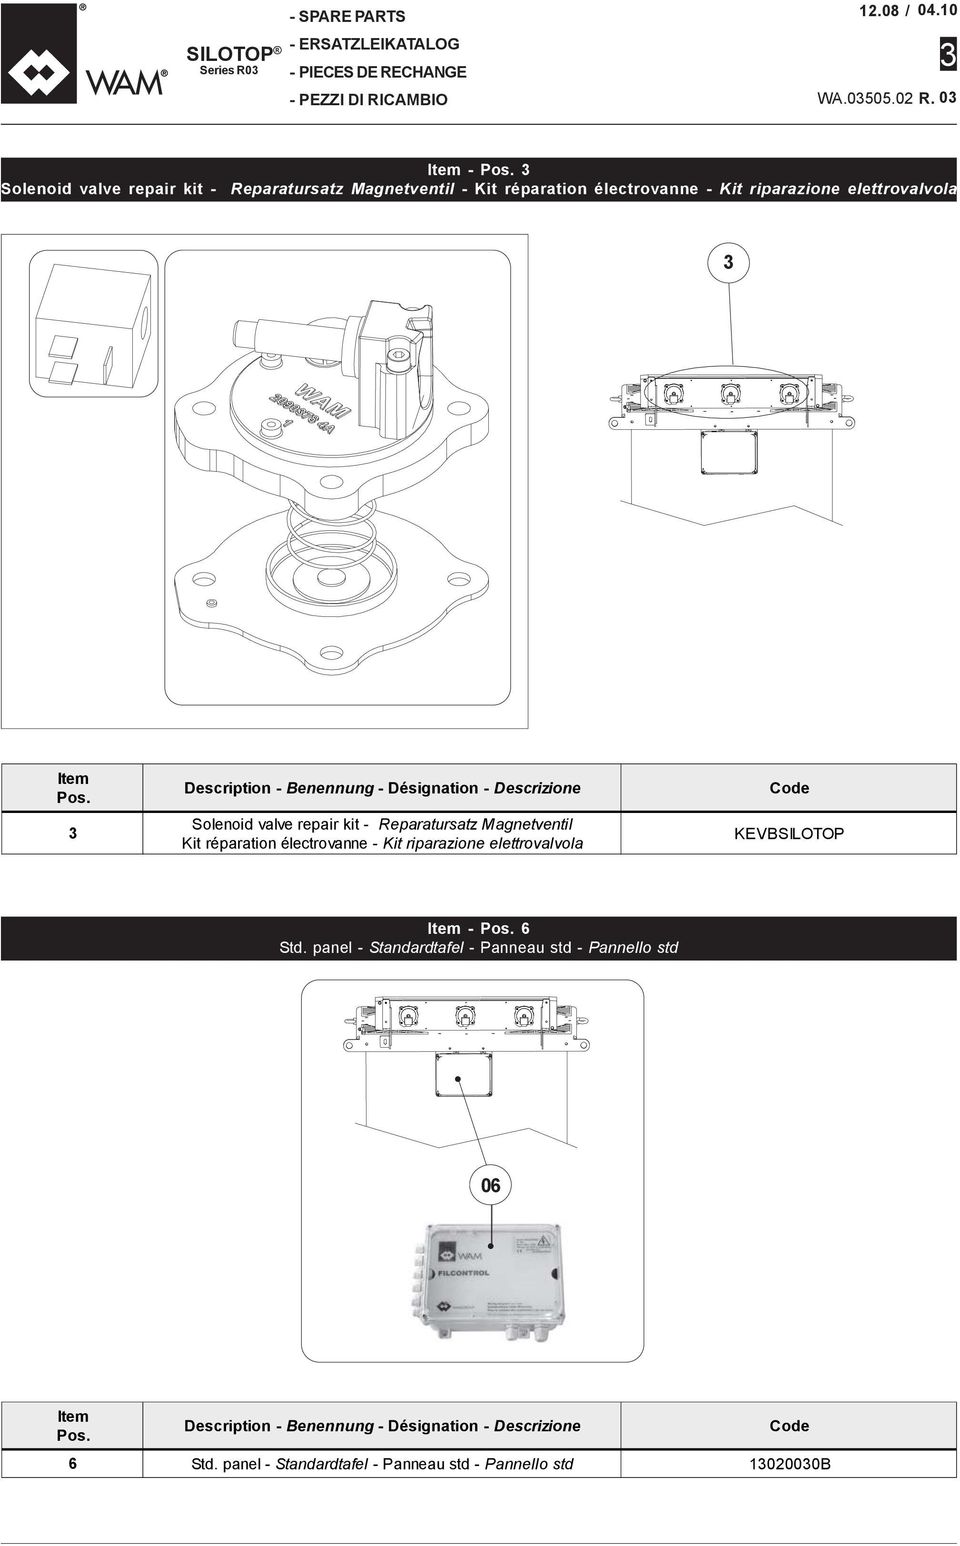 Description - Benennung - Désignation - Descrizione Solenoid valve repair kit - Reparatursatz Magnetventil Kit réparation électrovanne - Kit riparazione elettrovalvola Code KEVBSILOTOP Std.